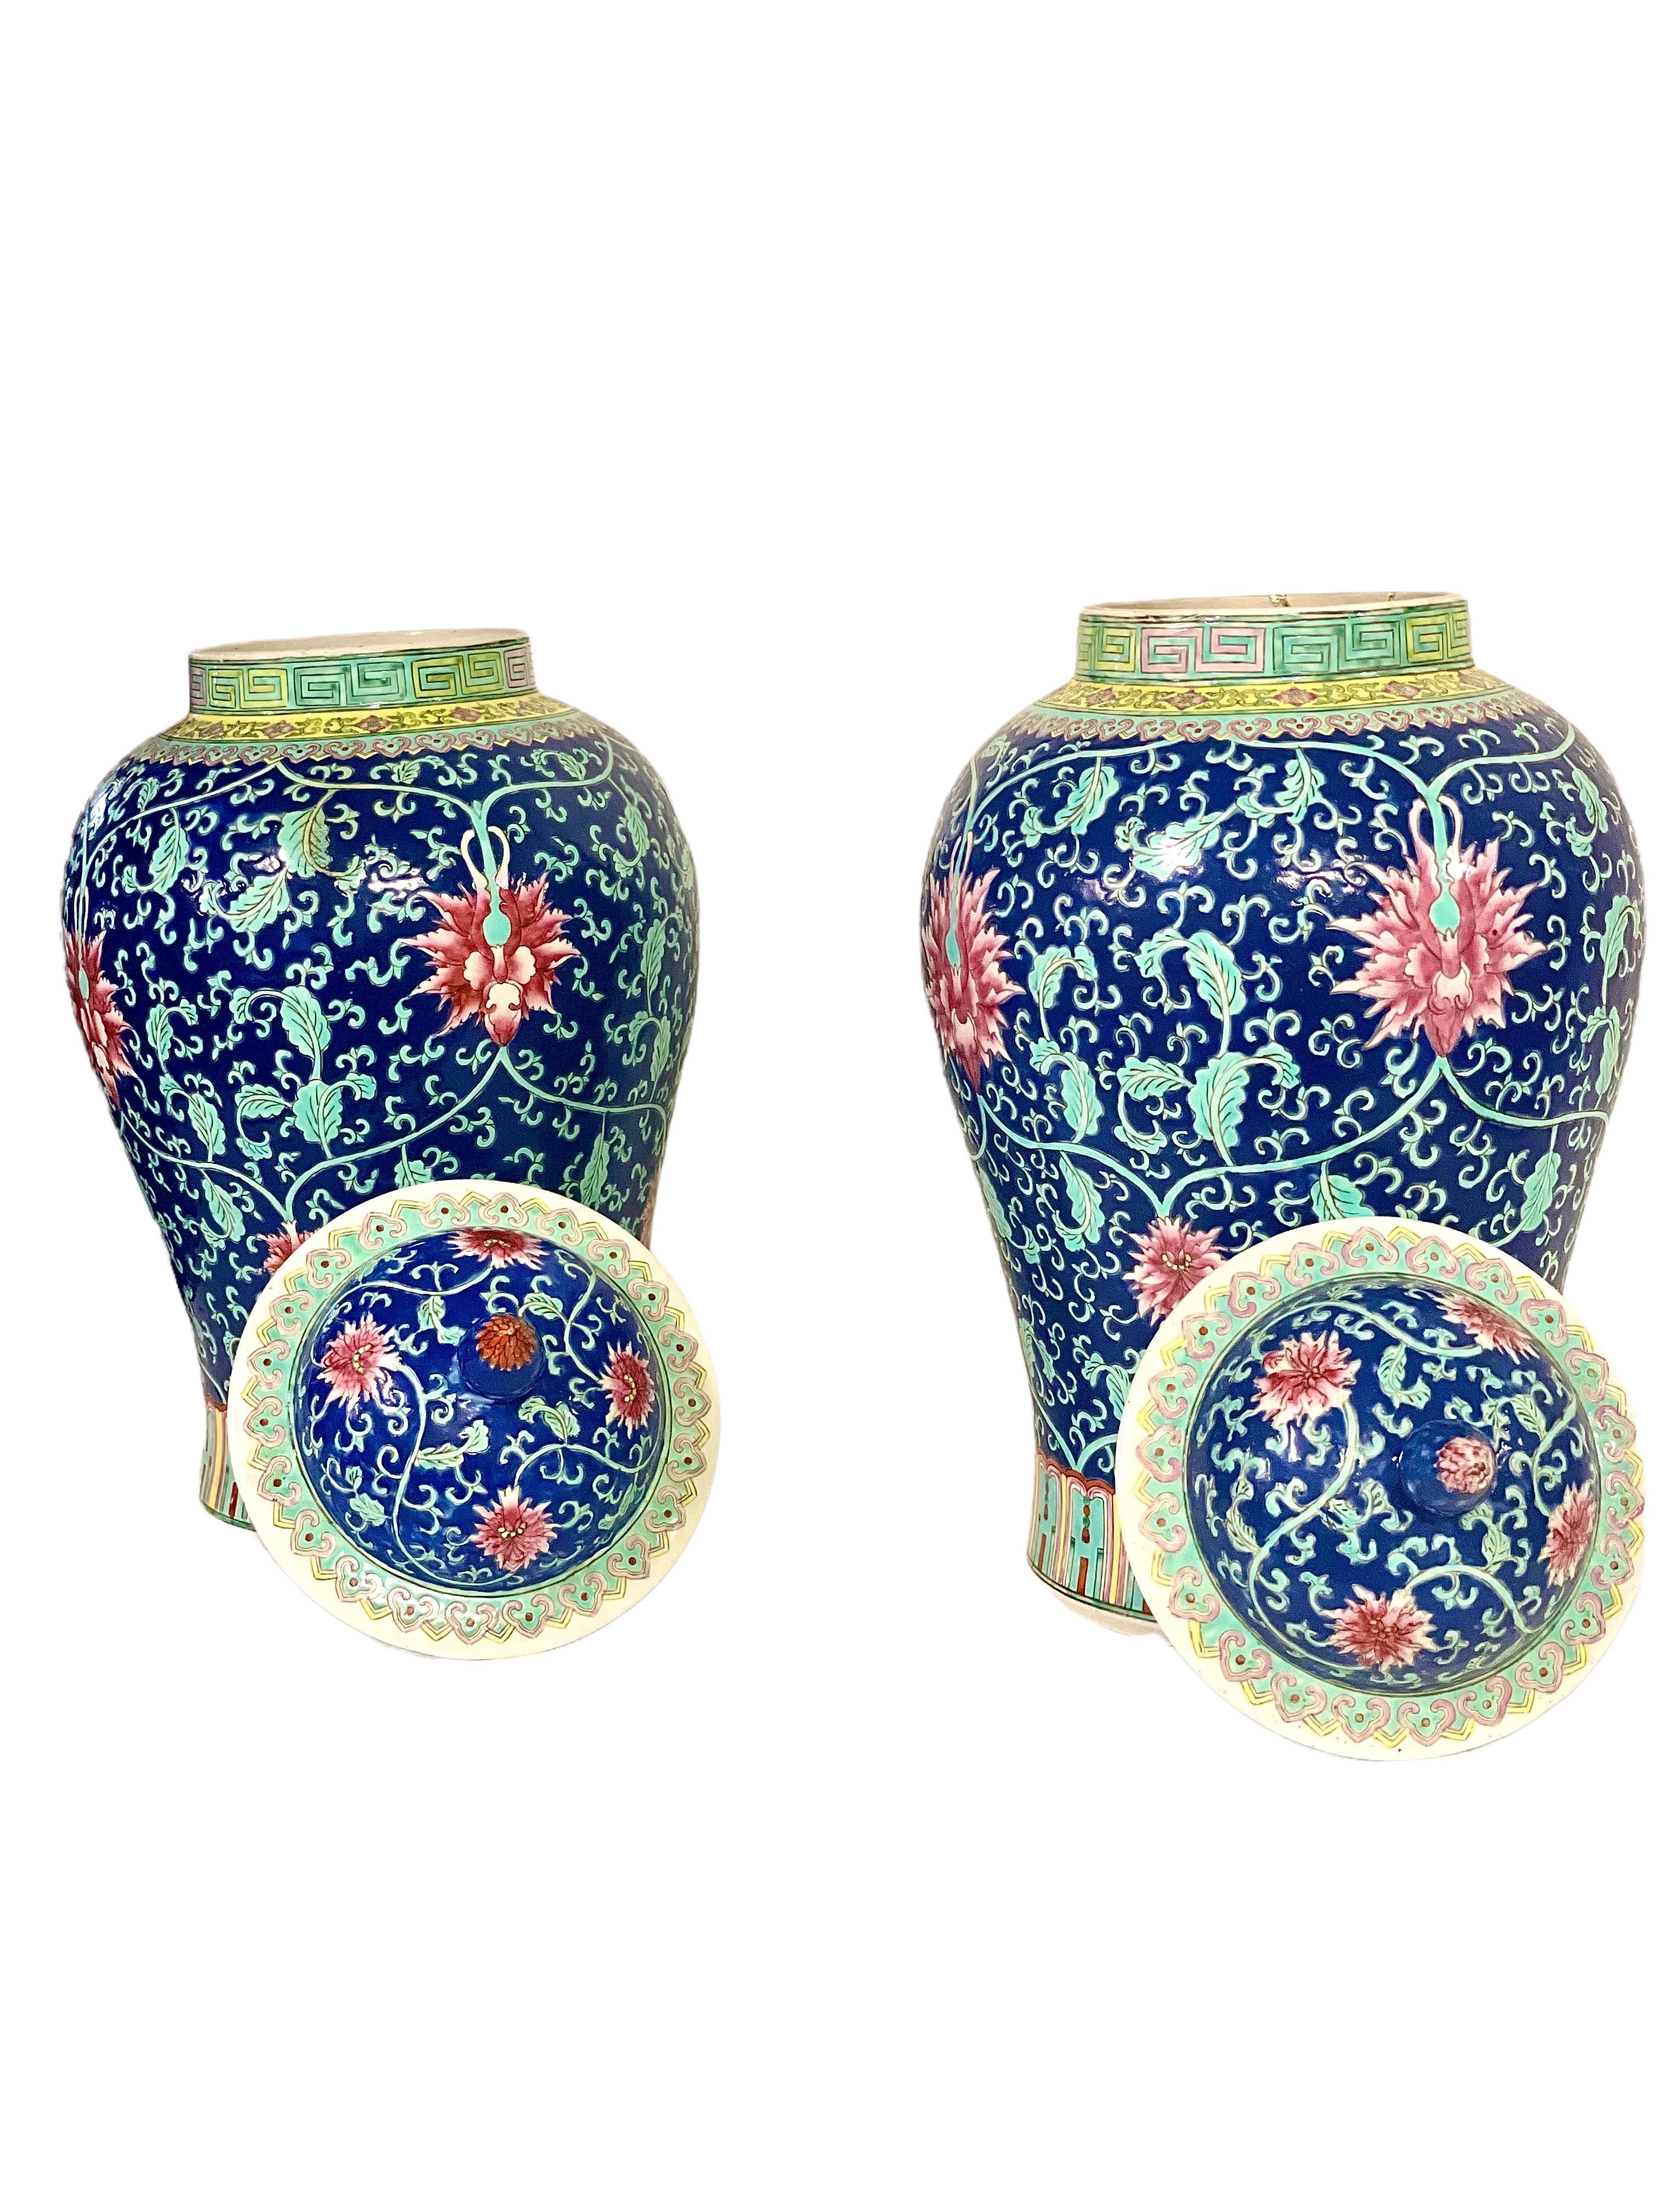 Ein fein dekoriertes Paar großer balusterförmiger Vasen aus der Zeit der Chinesischen Republik mit einem farbenfrohen handgemalten Muster aus roten Pfingstrosen und blassgrünem Laub auf dunkelblauem Hintergrund. Die aus dem 20. Jahrhundert